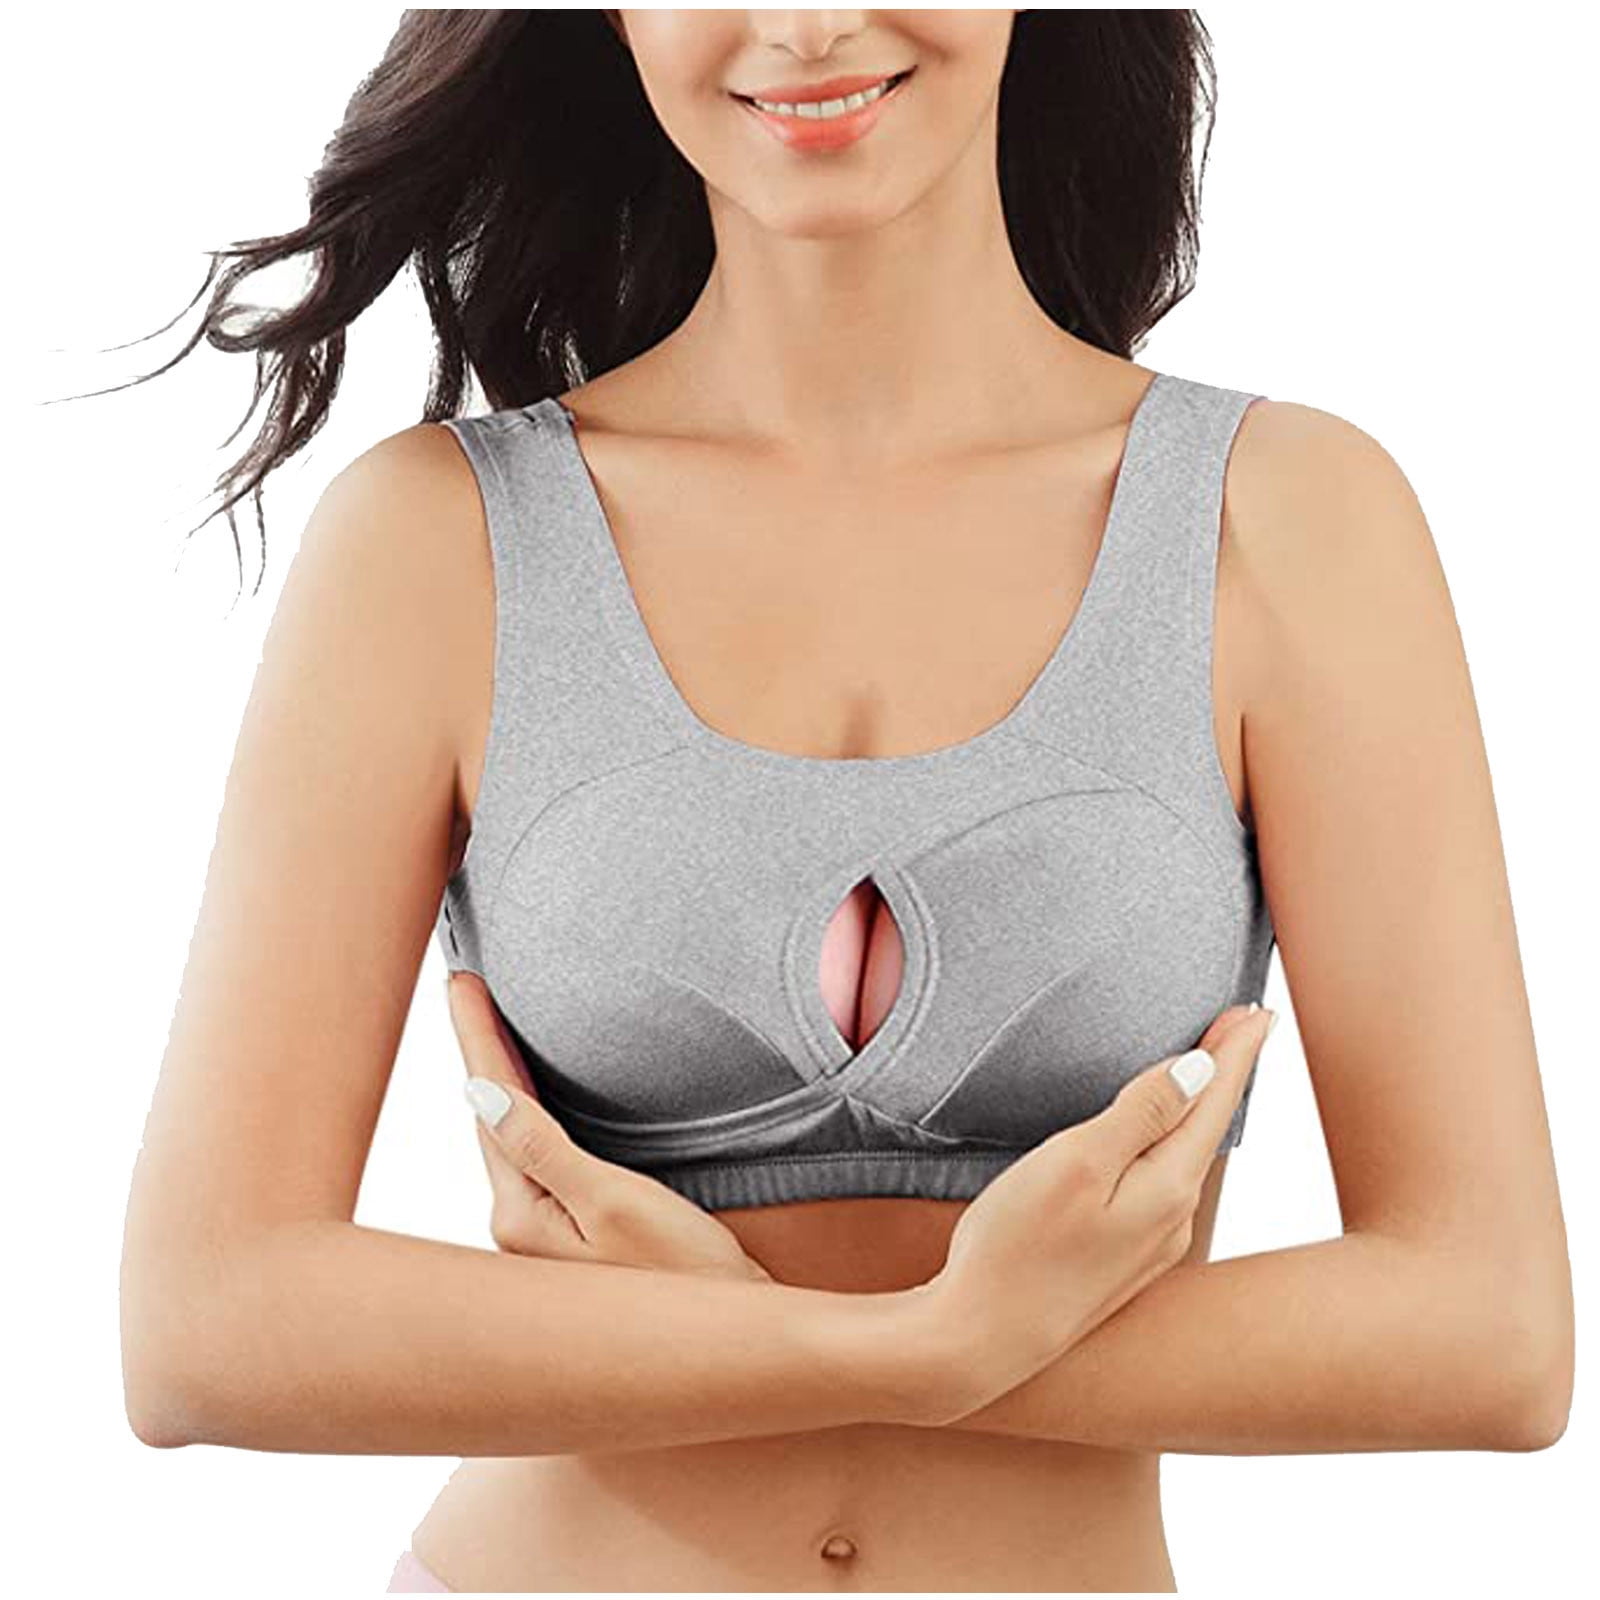 BELLZELY Bras for Women Plus Size Clearance Women's Bra Underwear  Breathable Sleep Yoga Cotton Bra Beauty Back Bra 